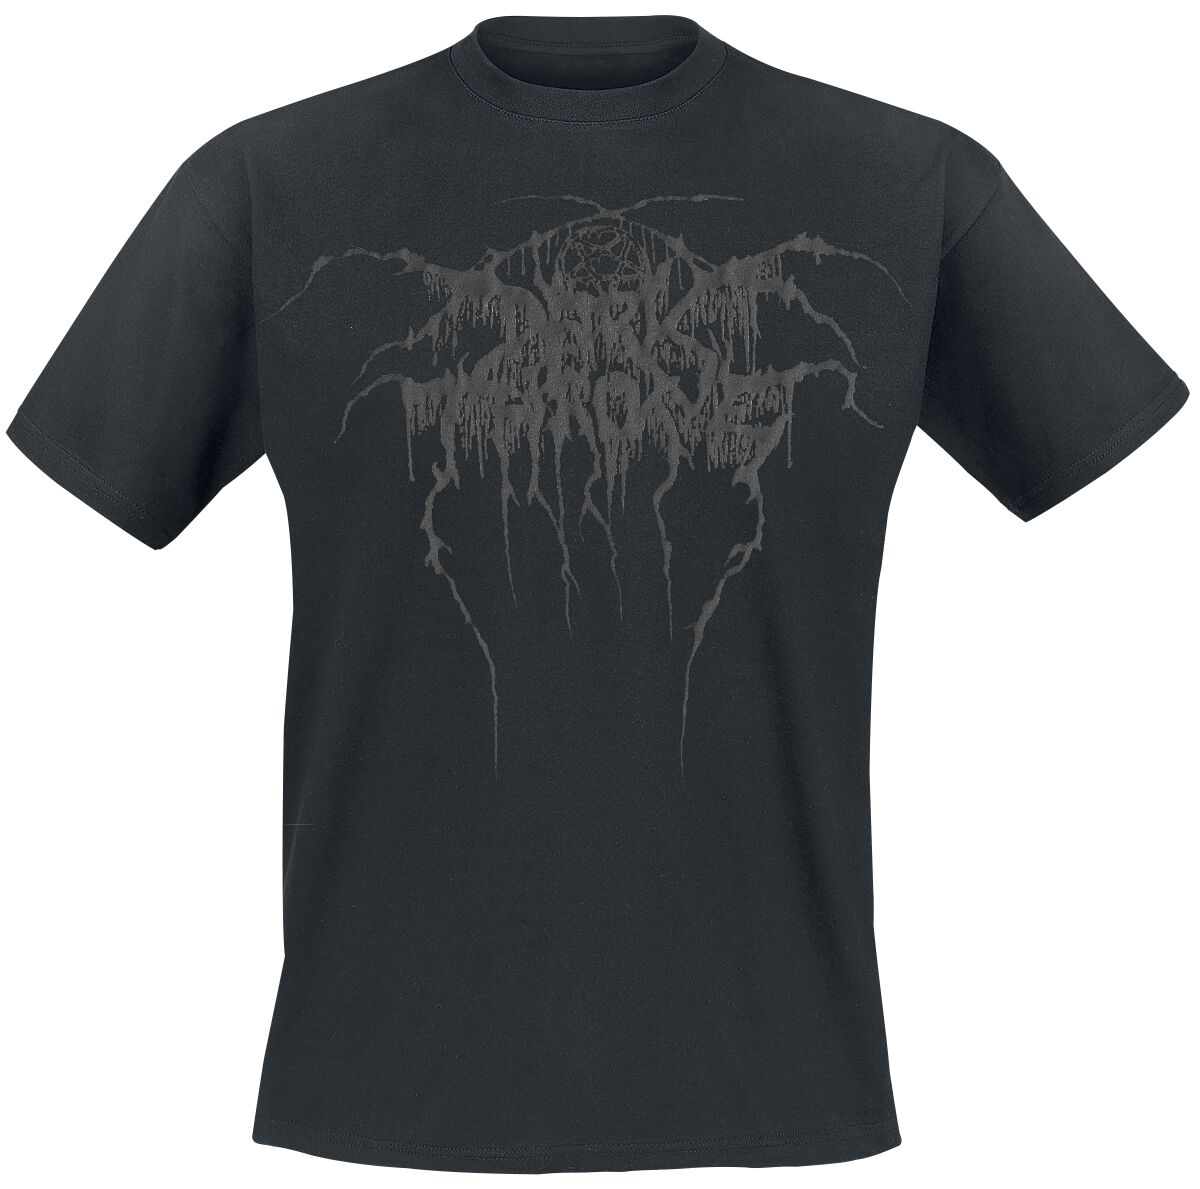 Darkthrone T-Shirt - True Norwegian Black Metal - S bis XXL - für Männer - Größe M - schwarz  - Lizenziertes Merchandise!